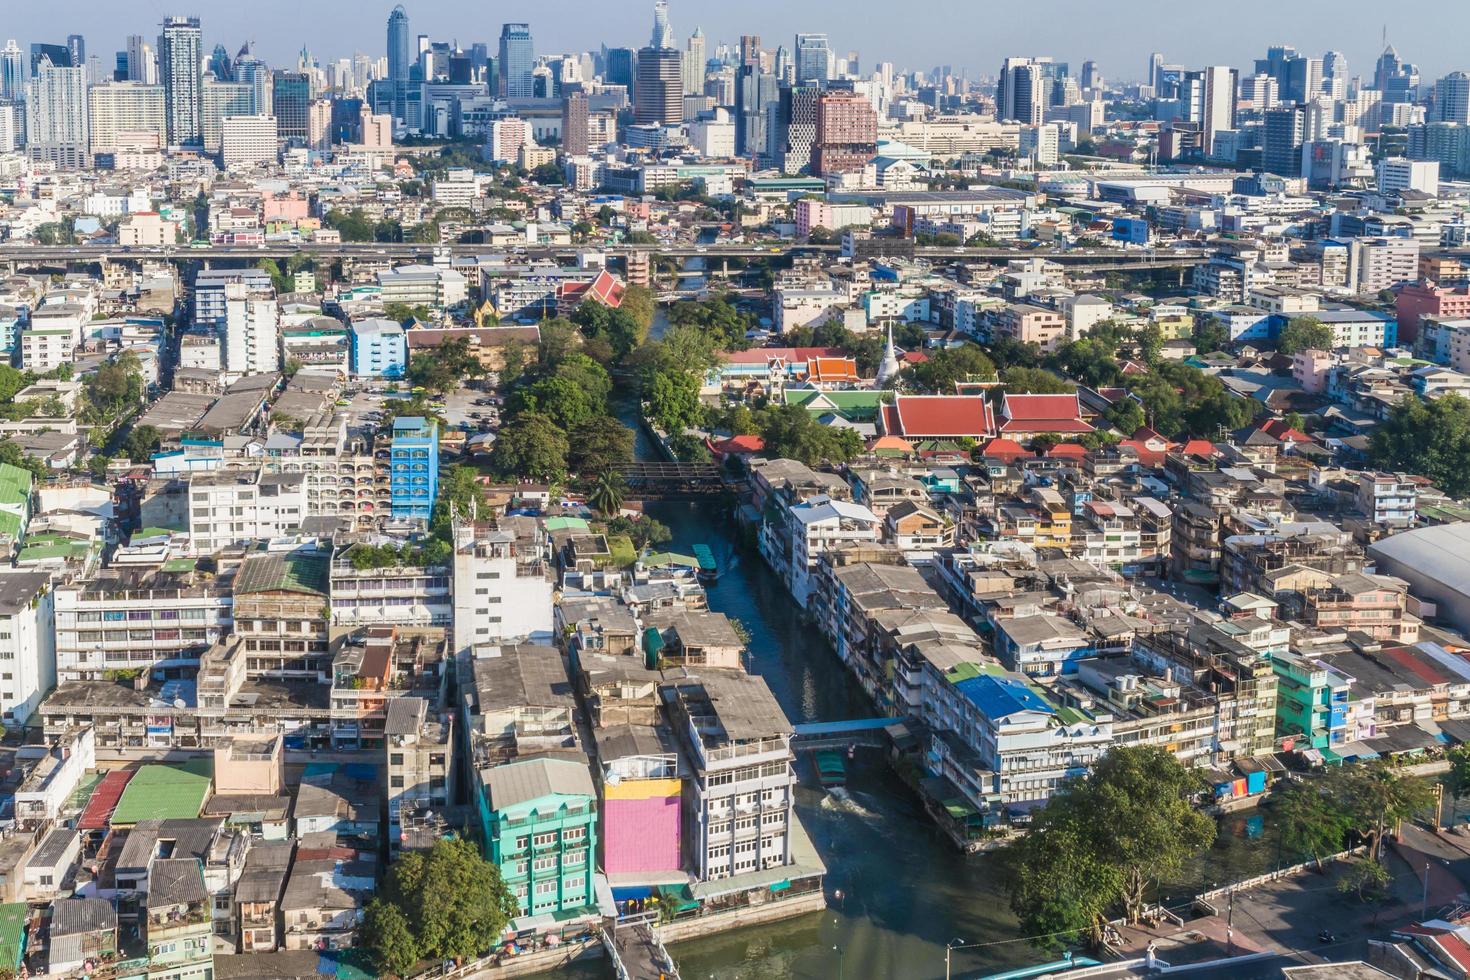 paysage urbain et bâtiment de bangkok pendant la journée, bangkok est la capitale de la thaïlande et est une destination touristique populaire. photo